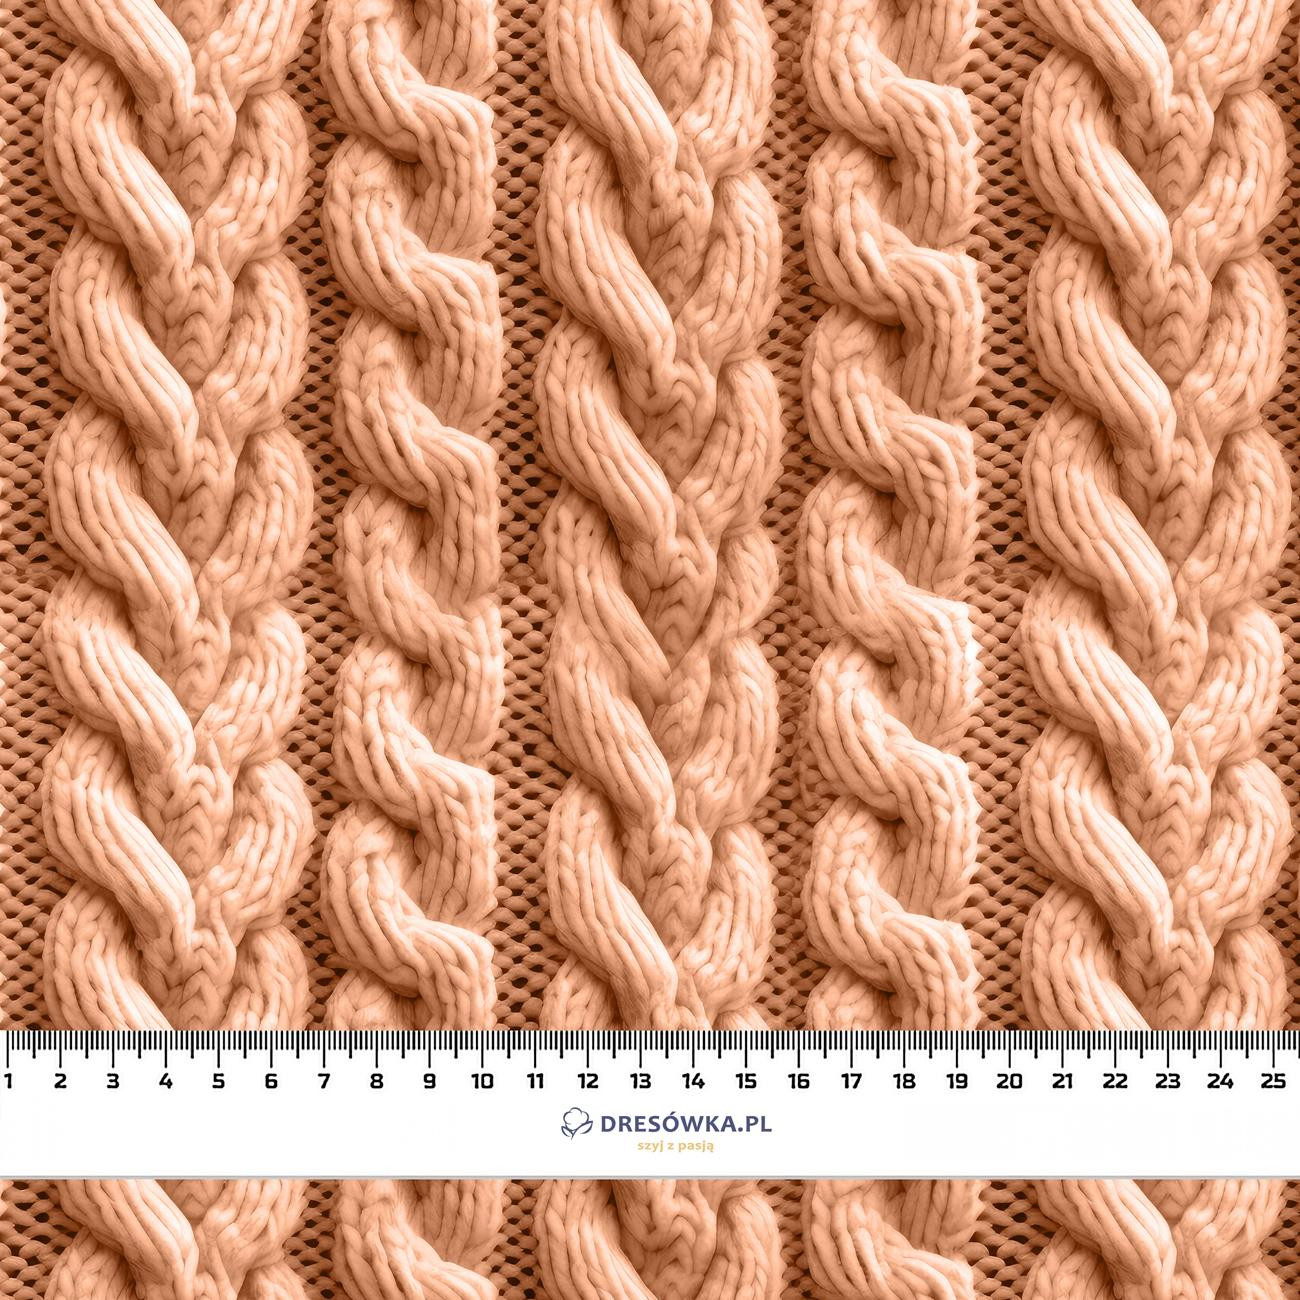 IMITATION SWEATER PAT. 4 / peach fuzz  - Hydrophobic brushed knit